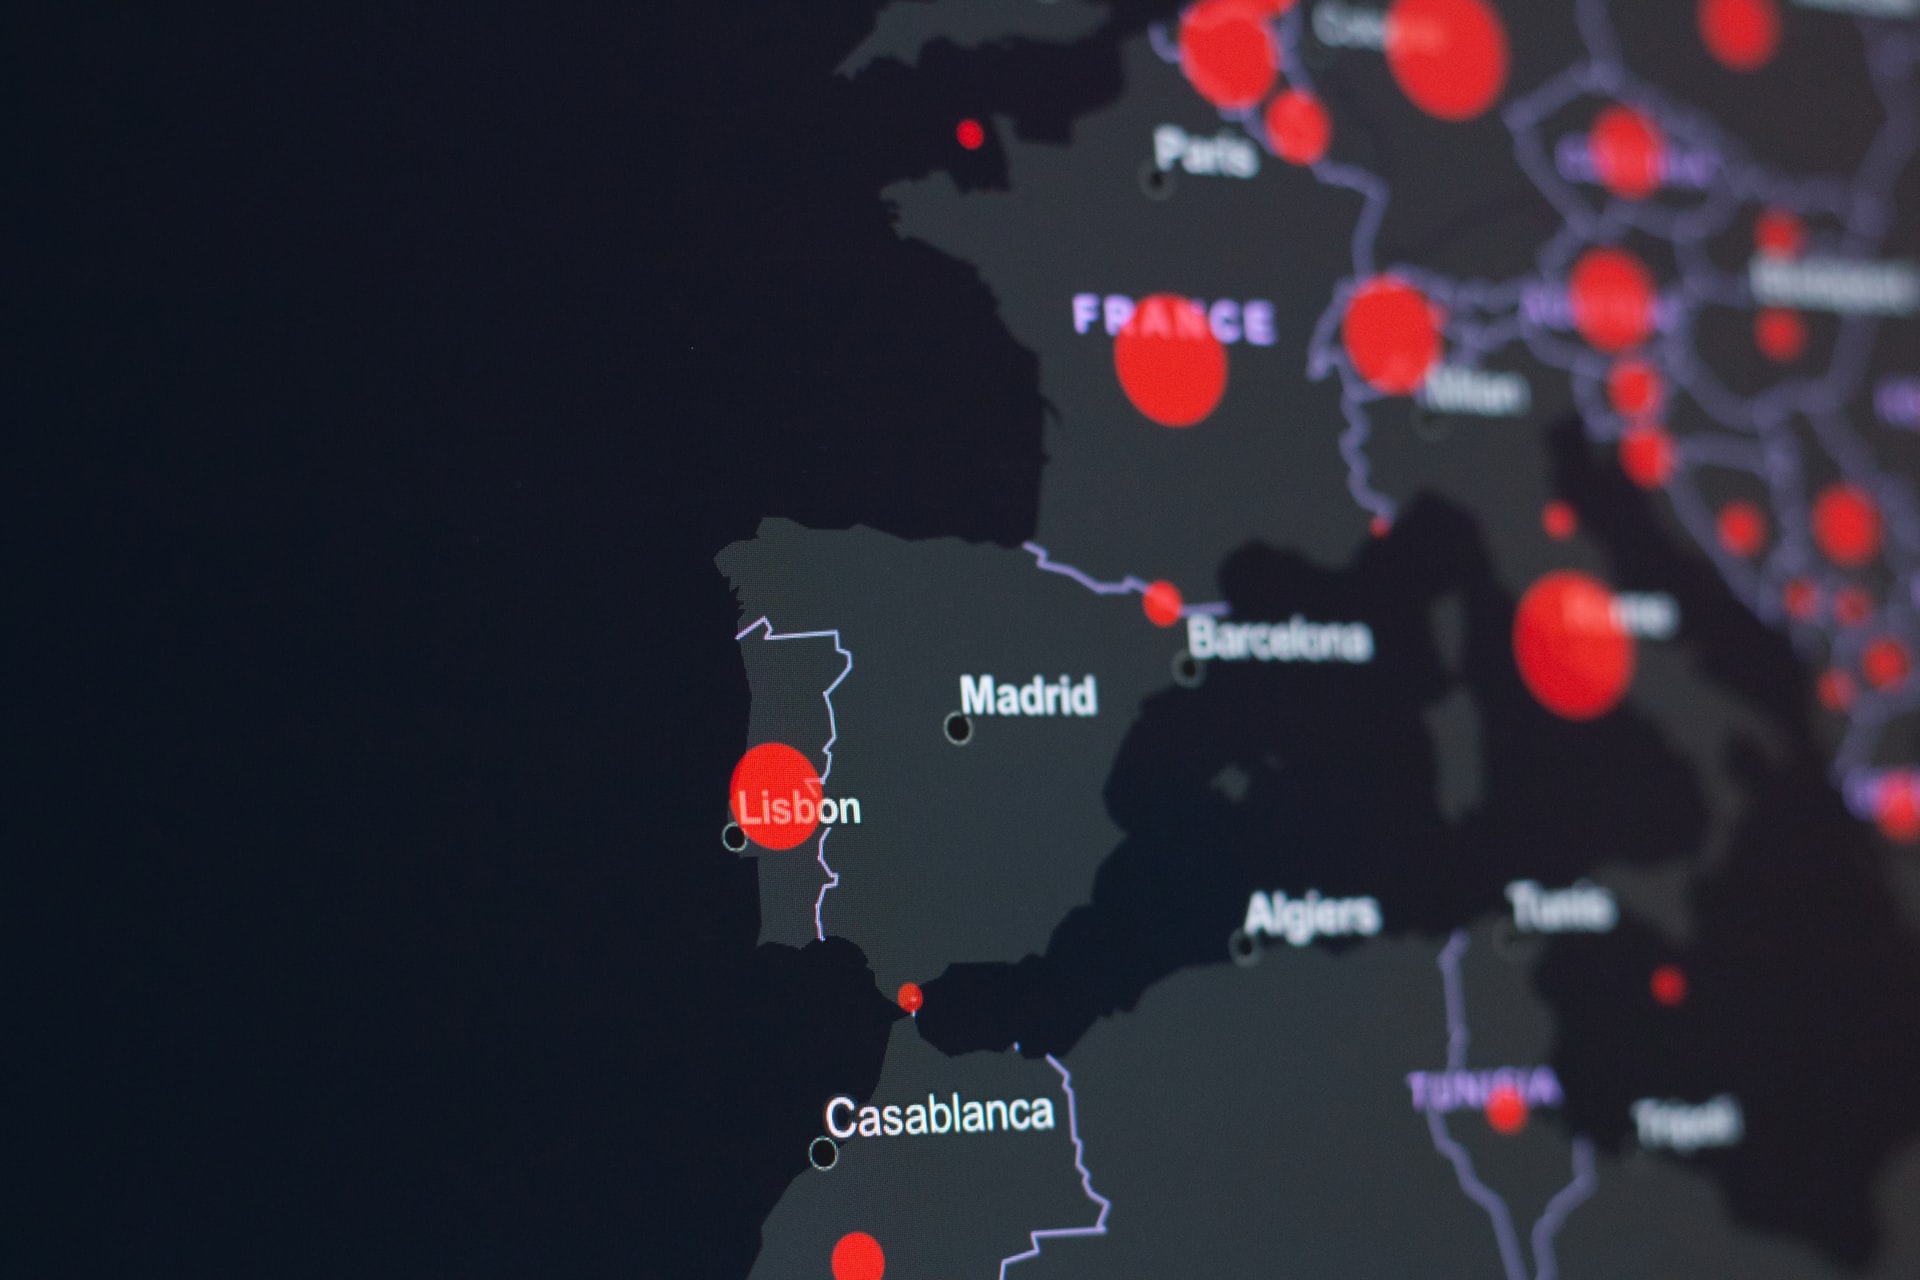 mapa de Portugal digital, mostrando o resto da Europa embaçado, focando em Portugal (onde comprar criptomoedas) e escrito Lisboa em inglês